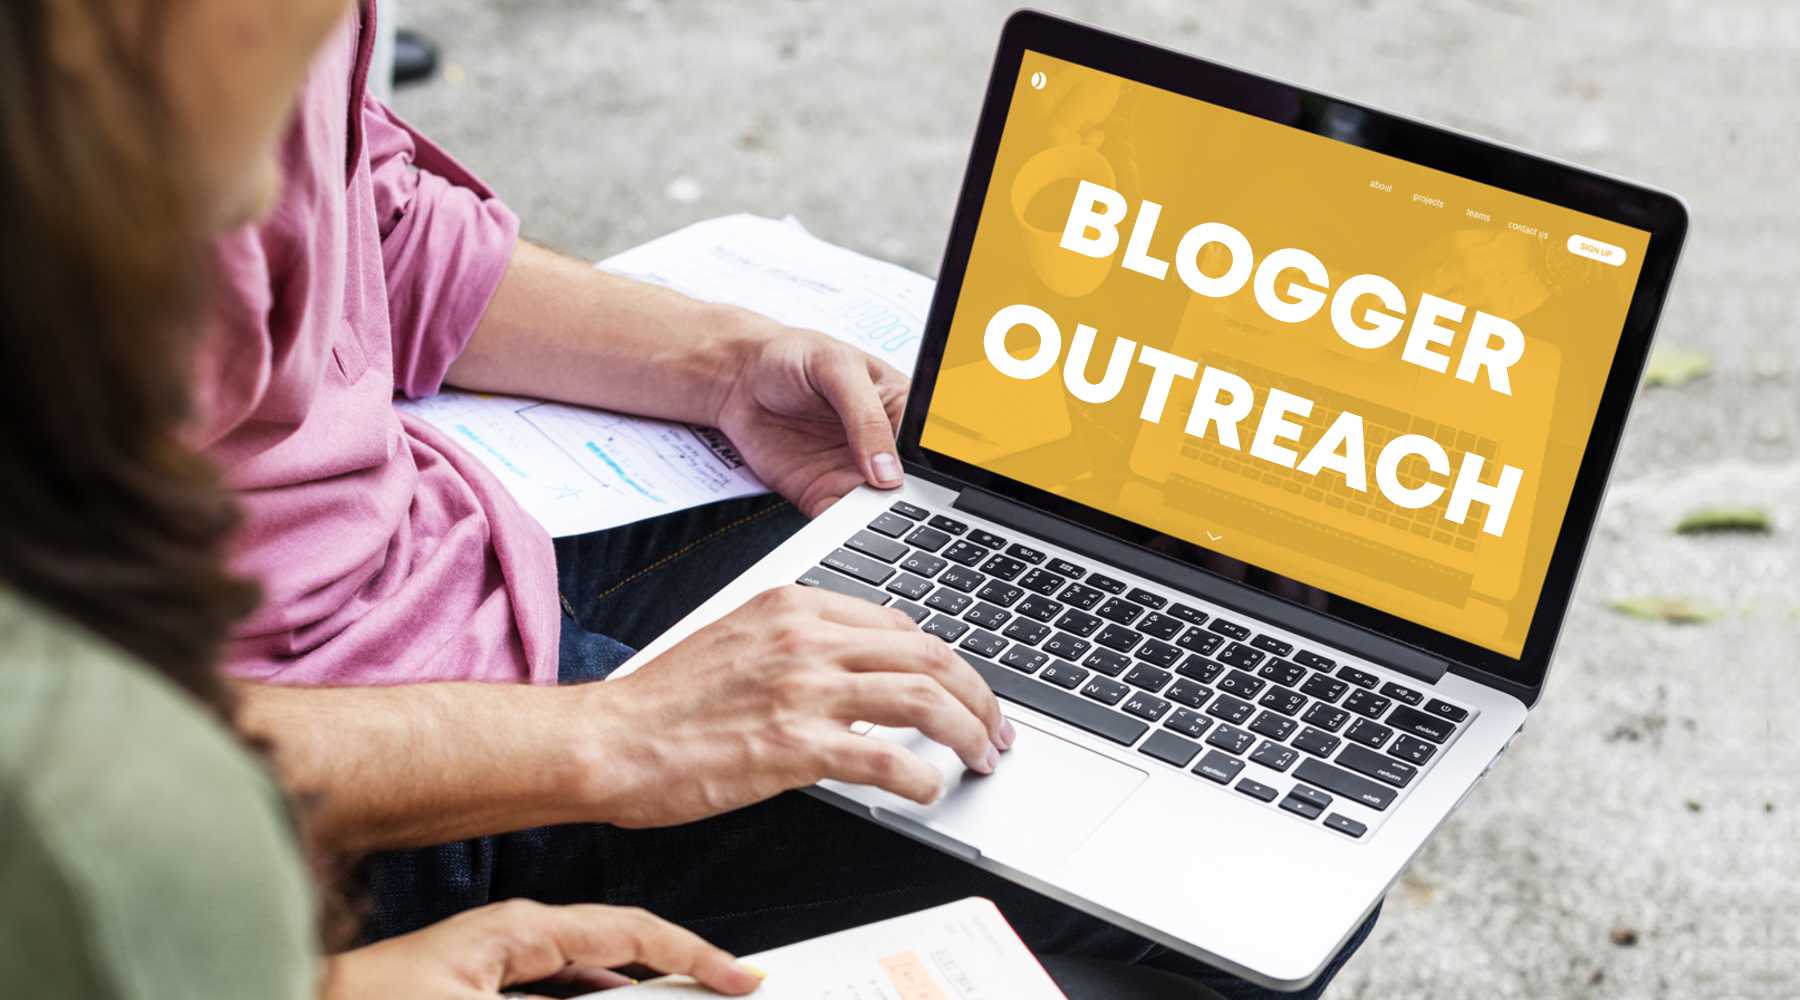 Blogger Outreach - SOS Digital PR